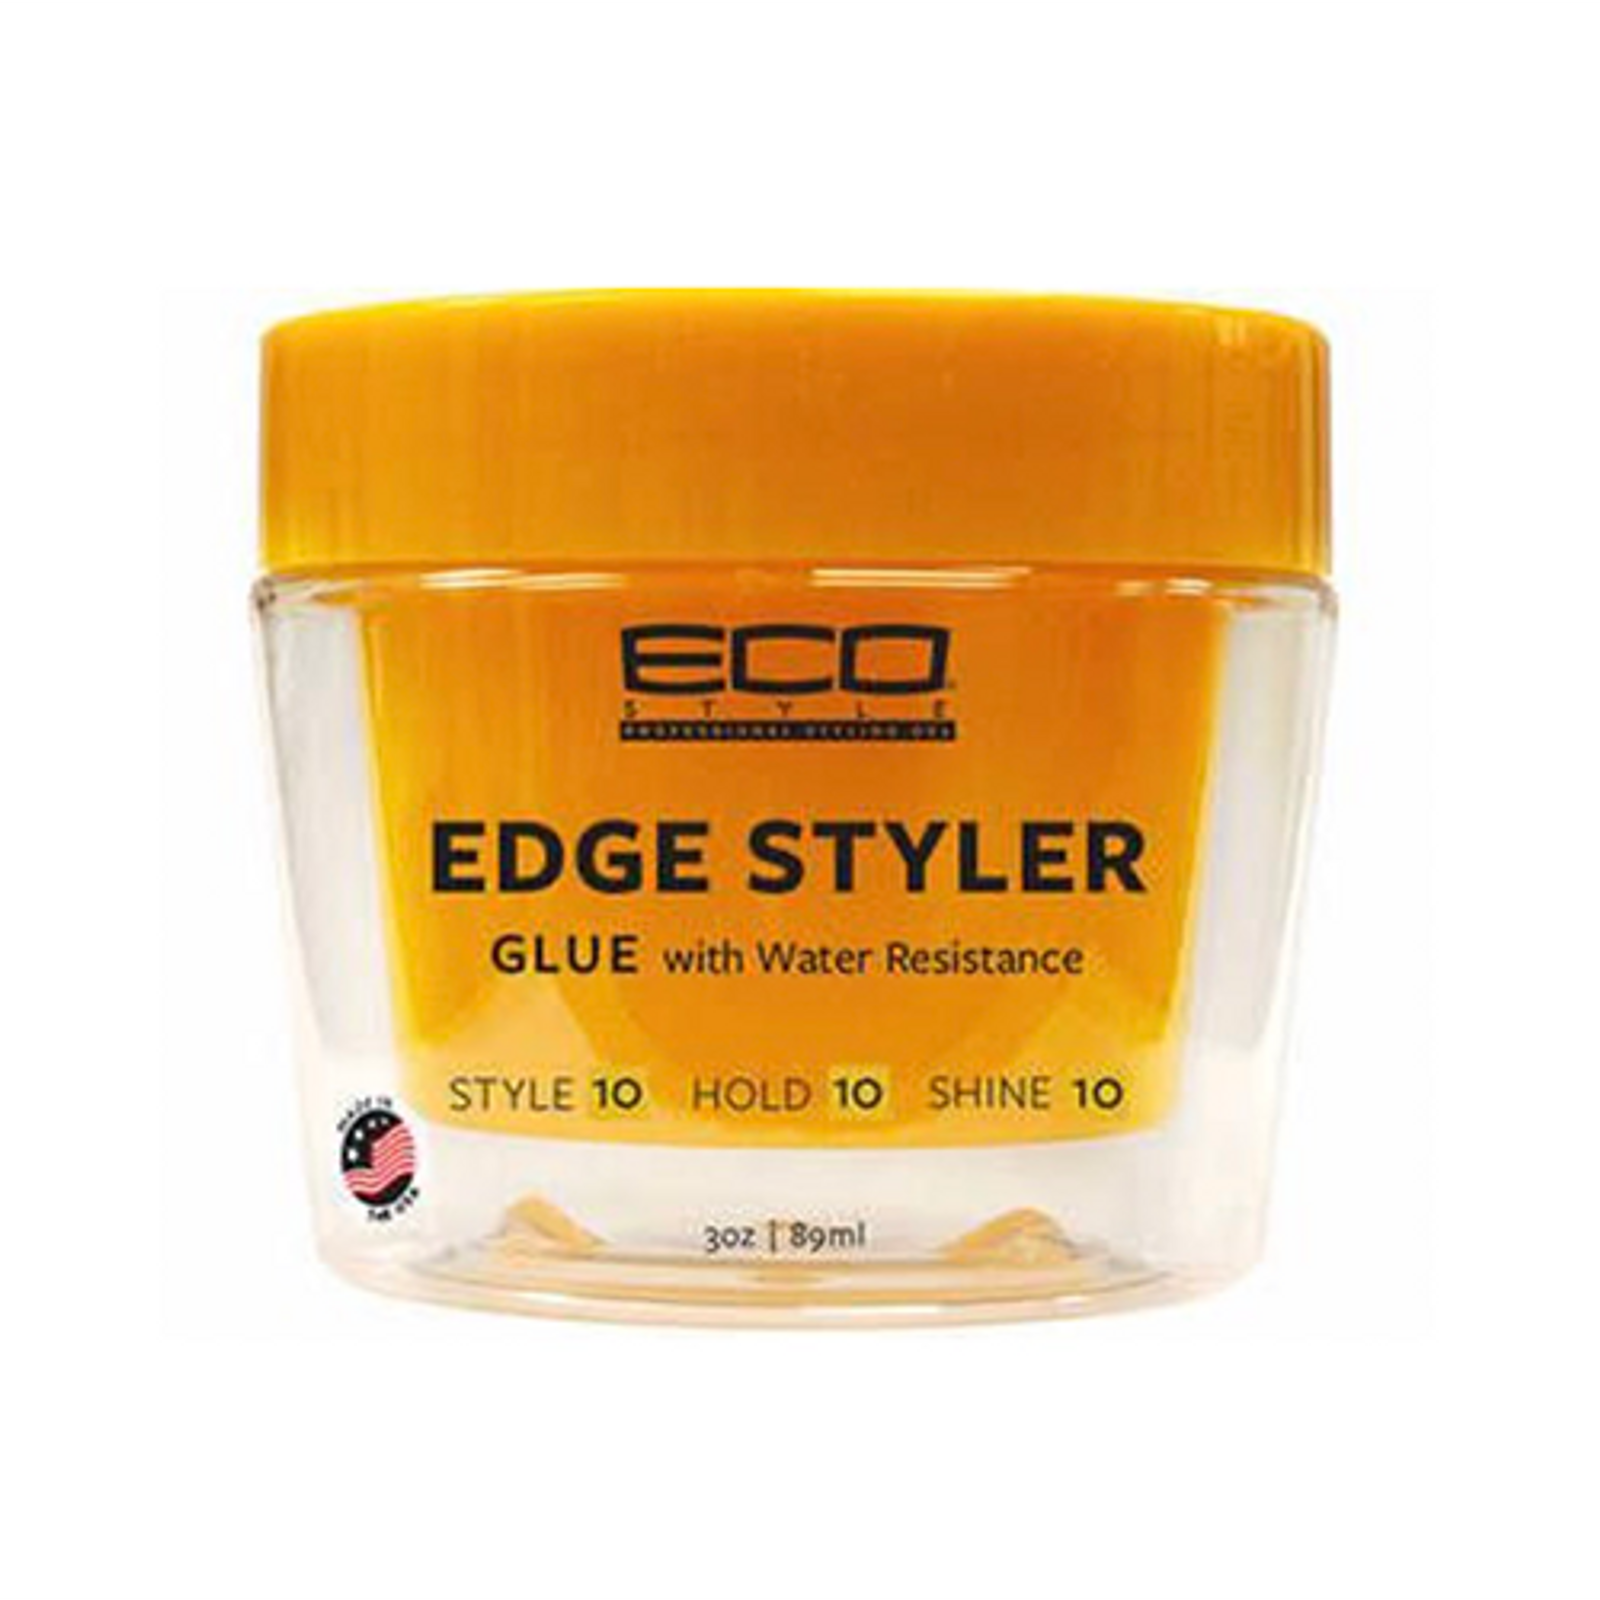 Eco Style Professional Styling Gel Edge Styler Gel 3 fl oz